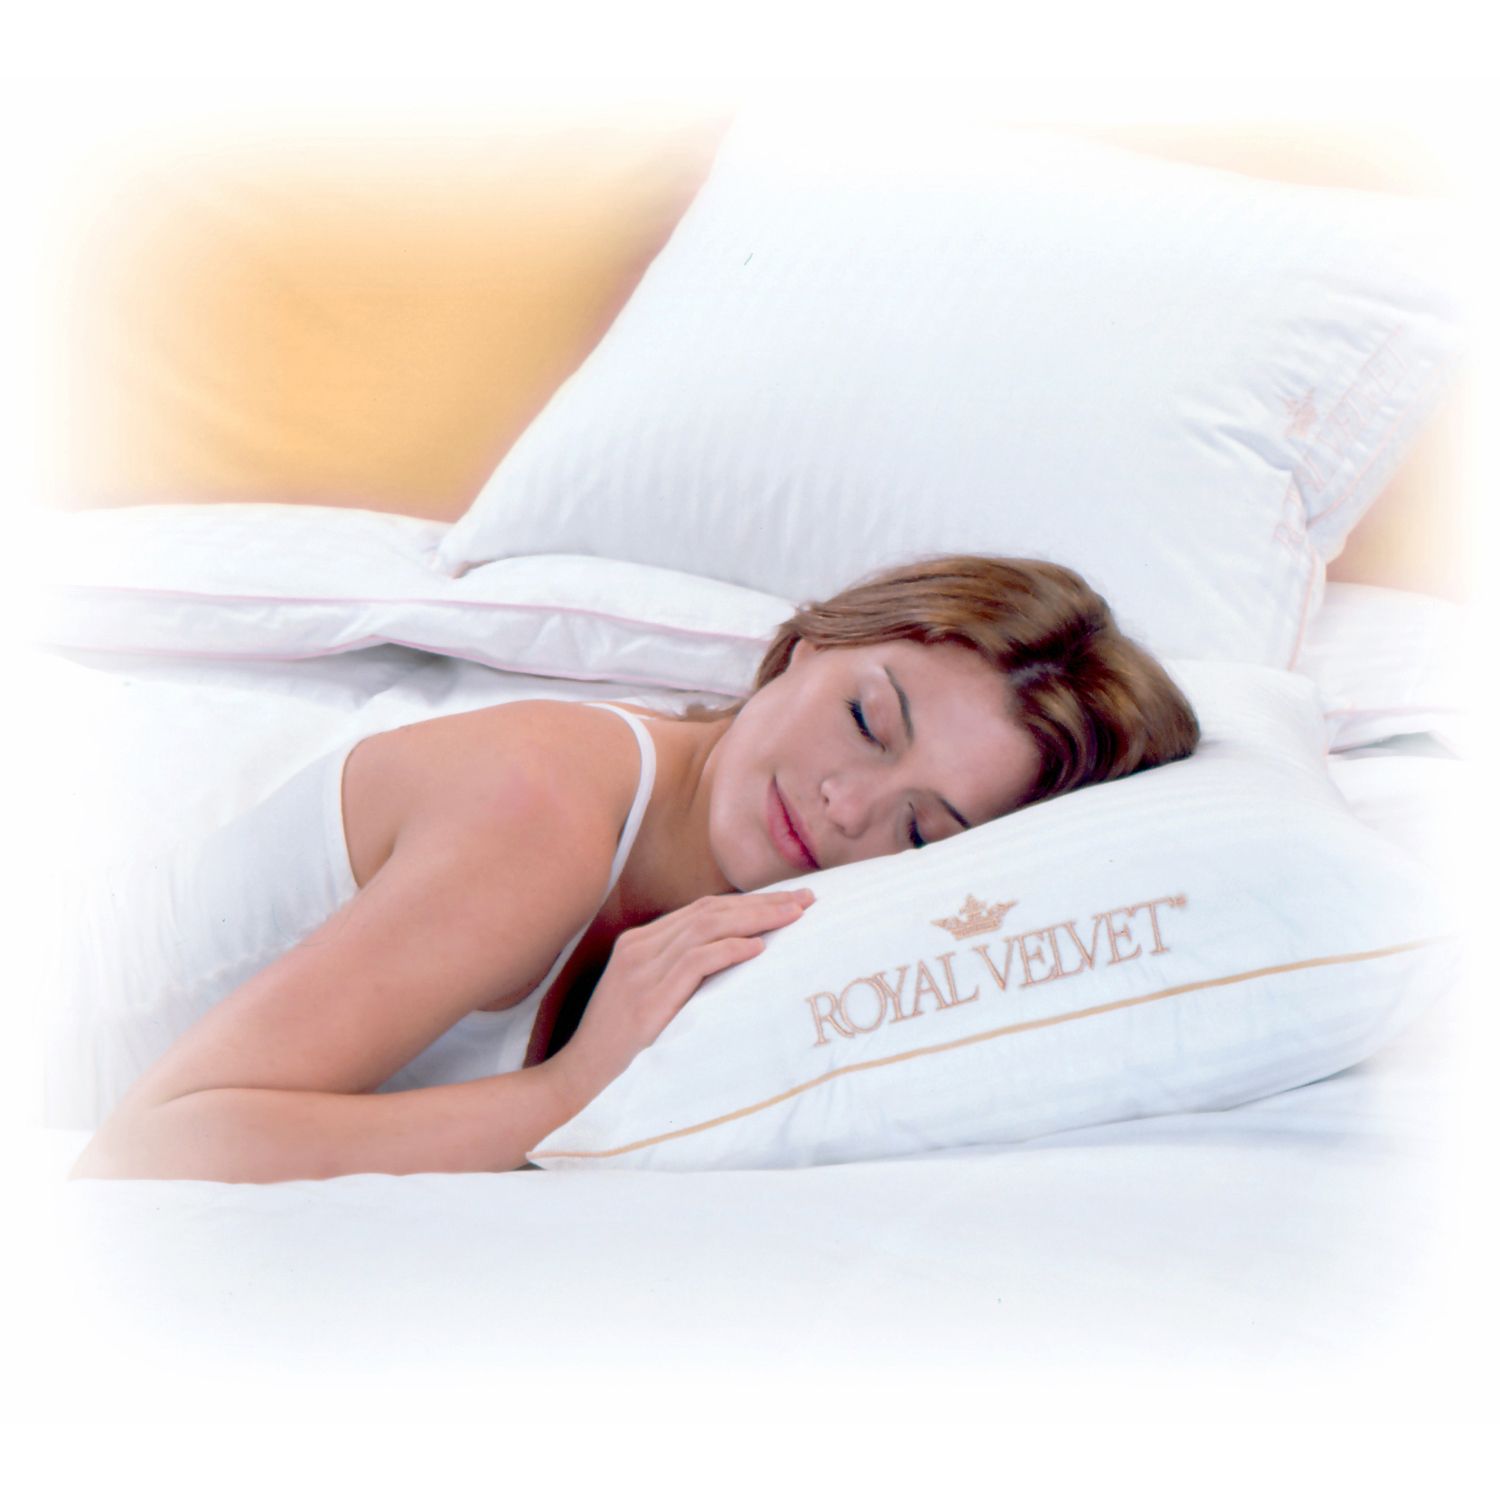 Royal Velvet Signature Pillow